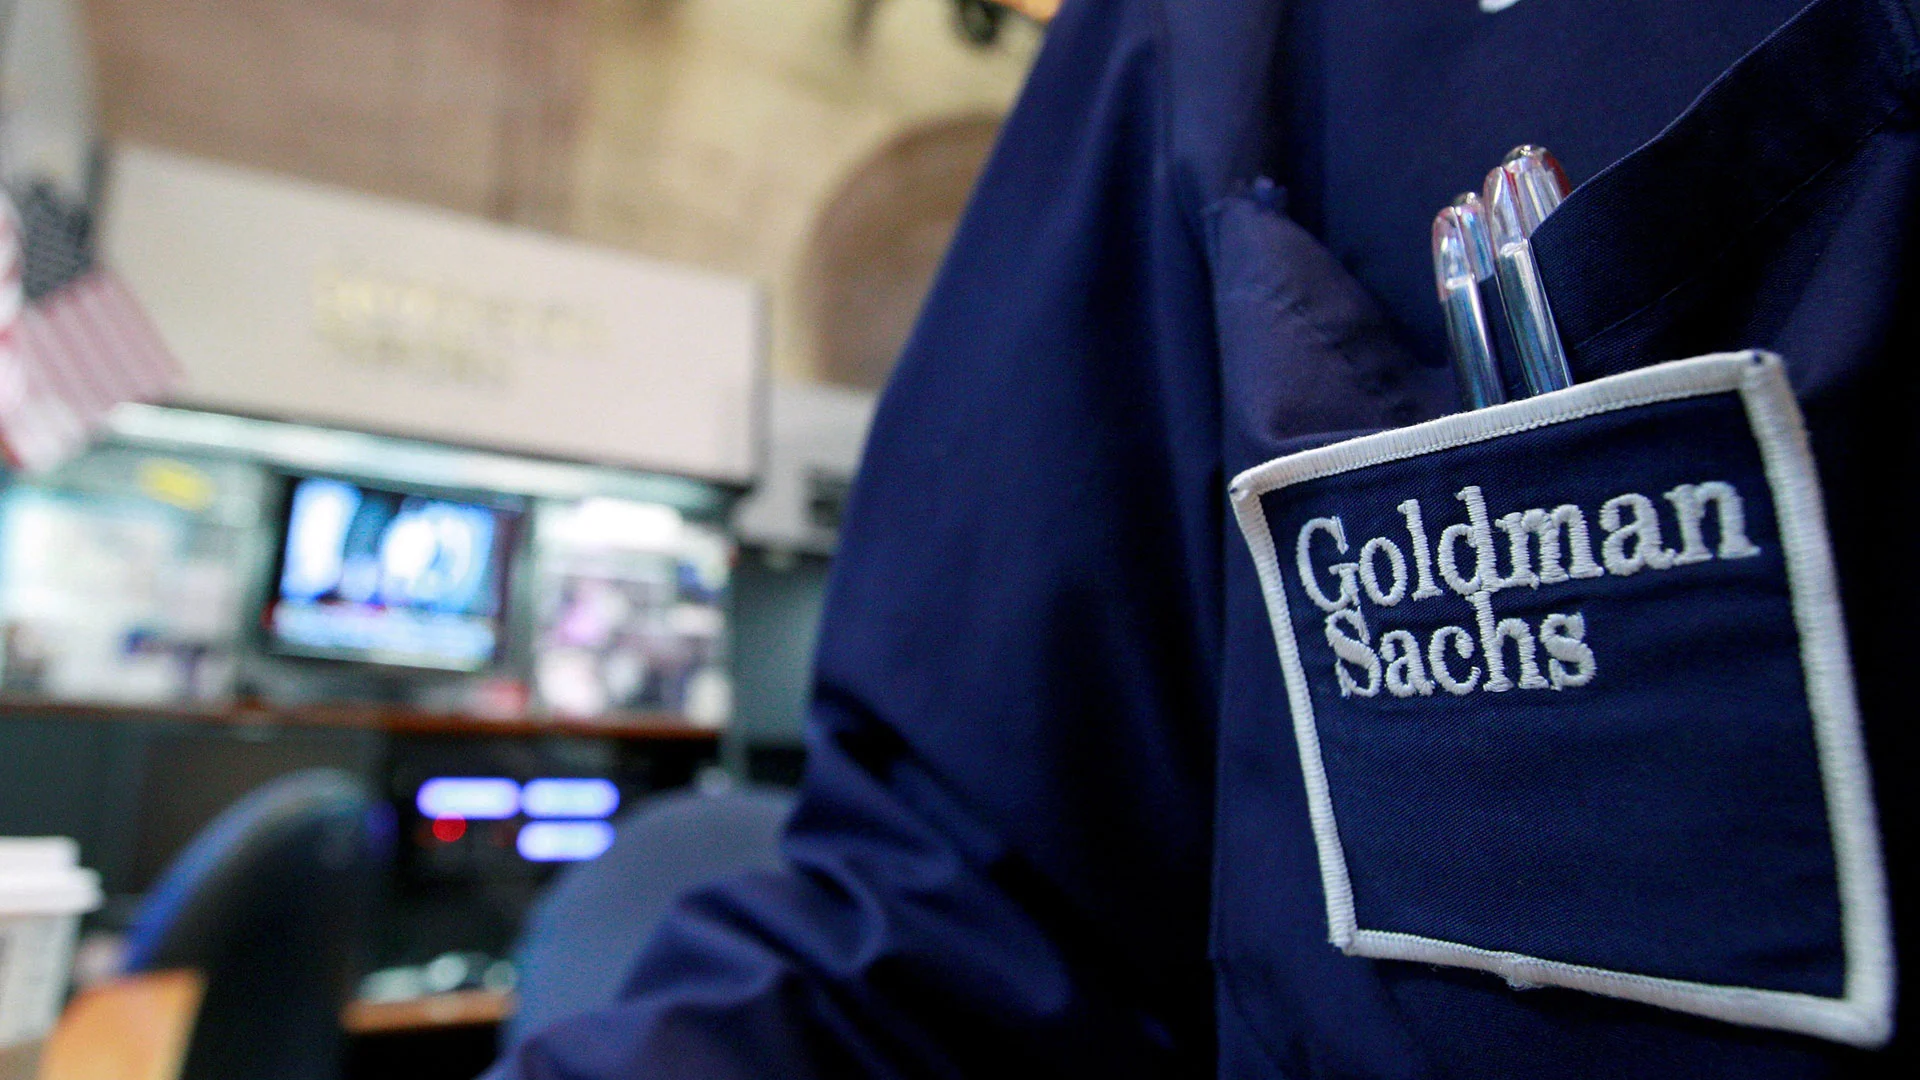 KI&#8209;Aktien verkaufen und stattdessen in diese Aktien investieren, sagt jetzt Goldman Sachs (Foto: Brendan McDermid/dpa-Picture Alliance)